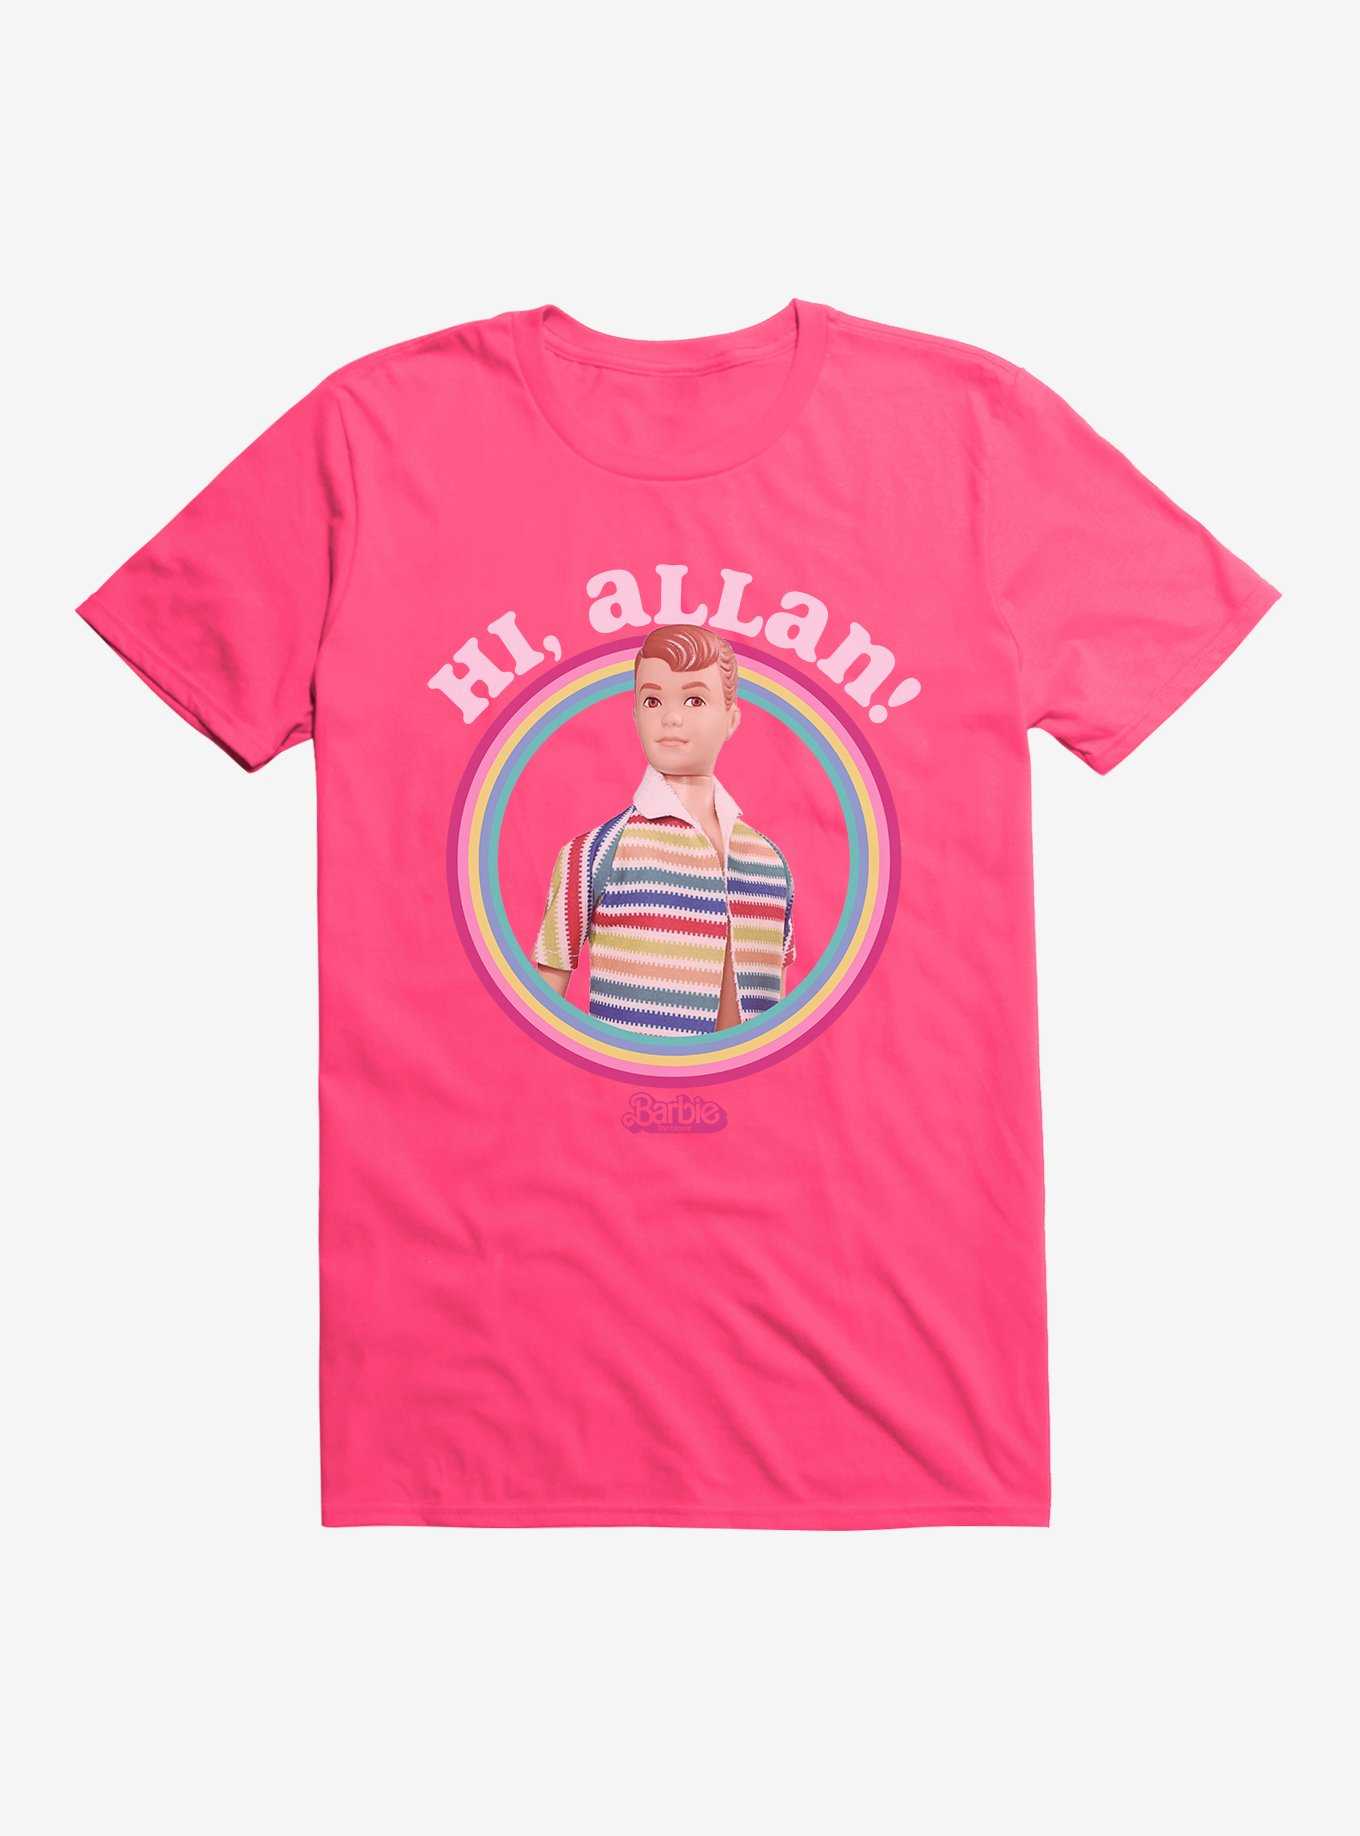 Barbie The Movie Hi, Allan! T-Shirt, , hi-res